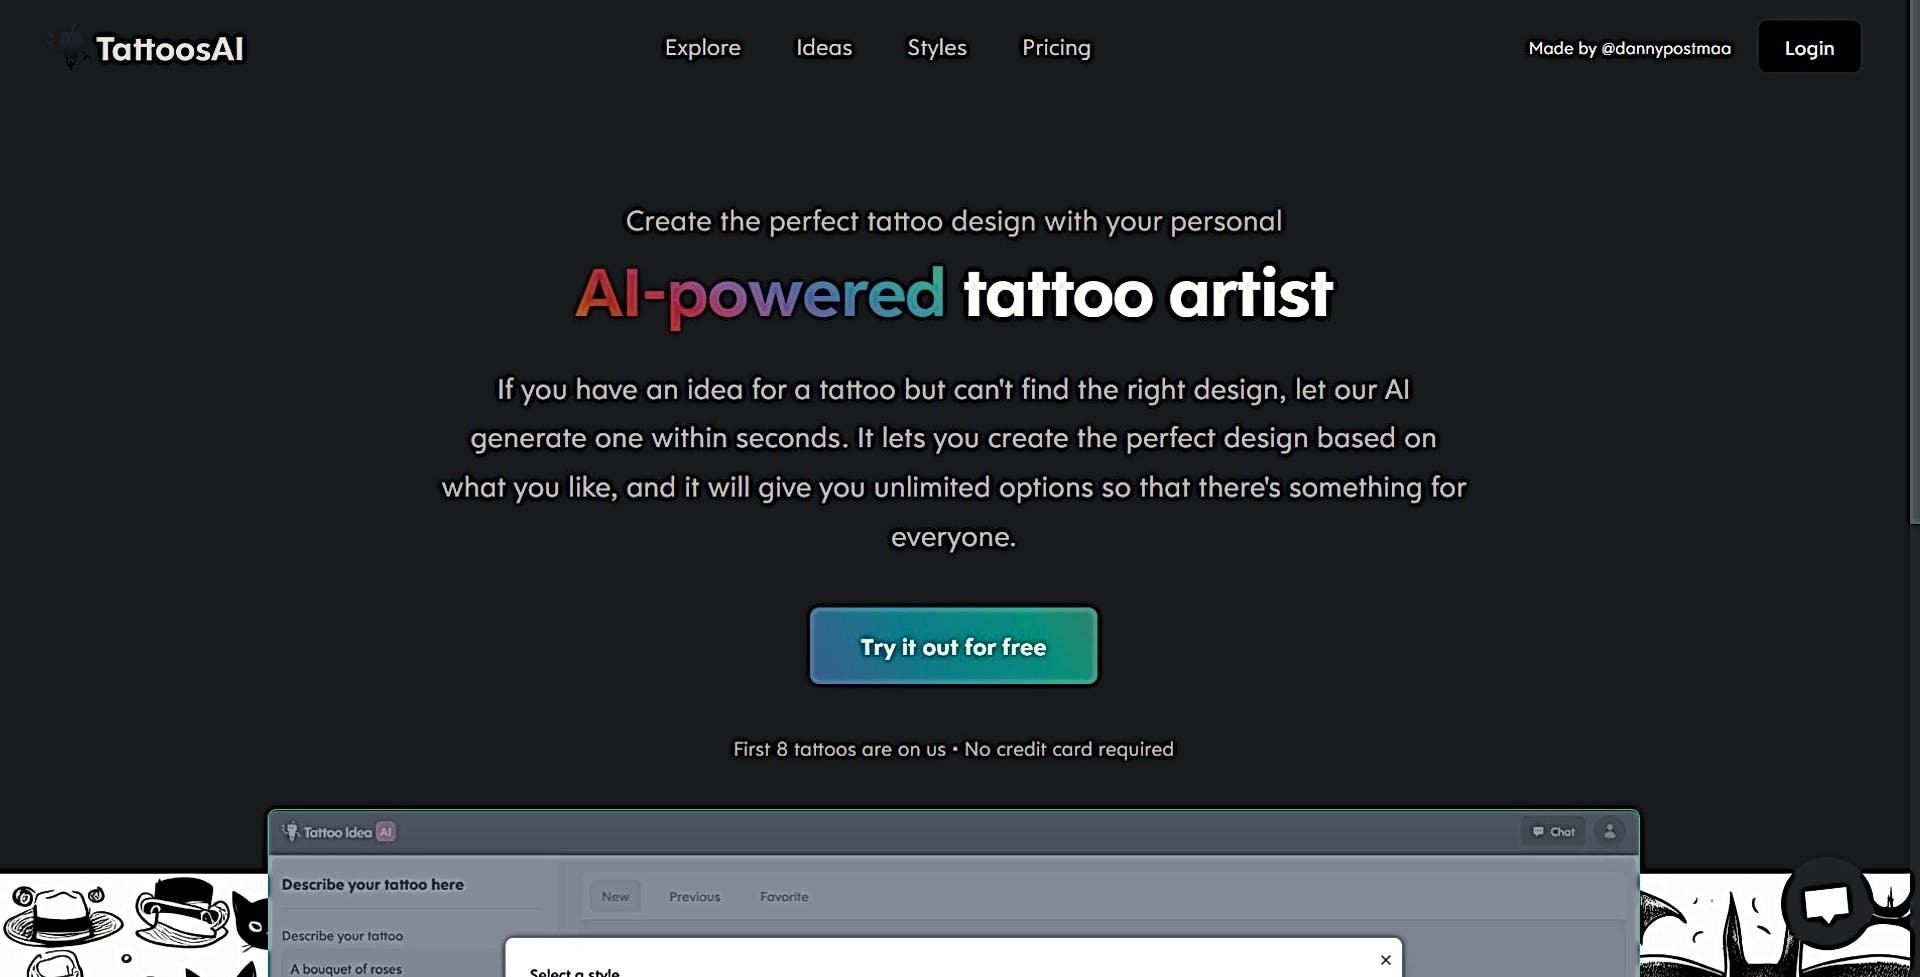 Tattoos AI featured